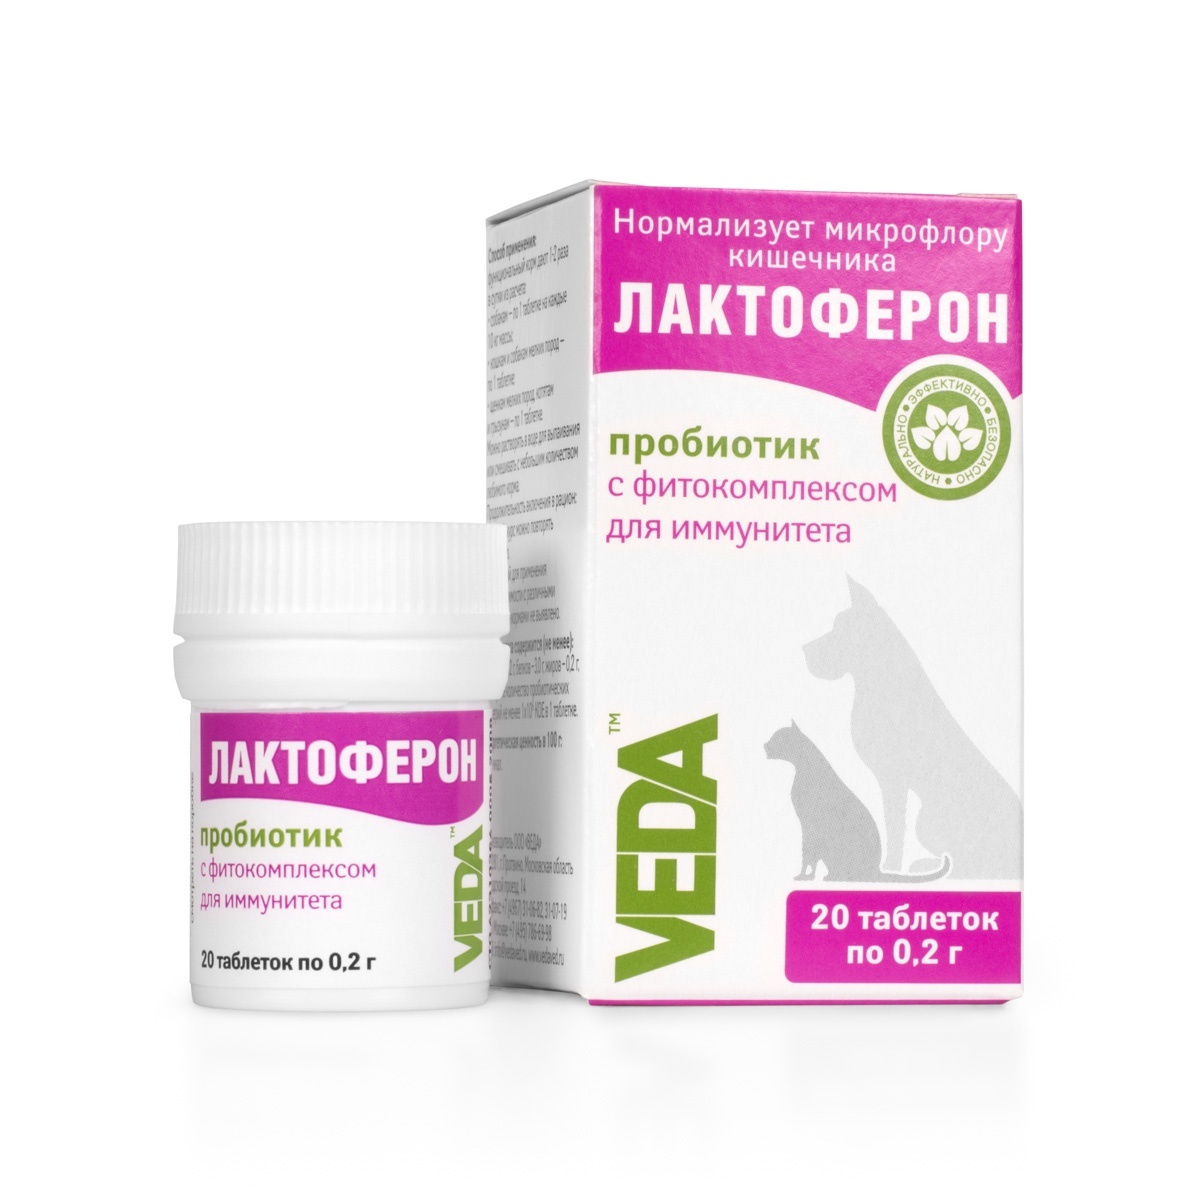 Веда Веда лактоферон-пробиотик для улучшения обмена веществ, 20 таб. (10 г) цена и фото